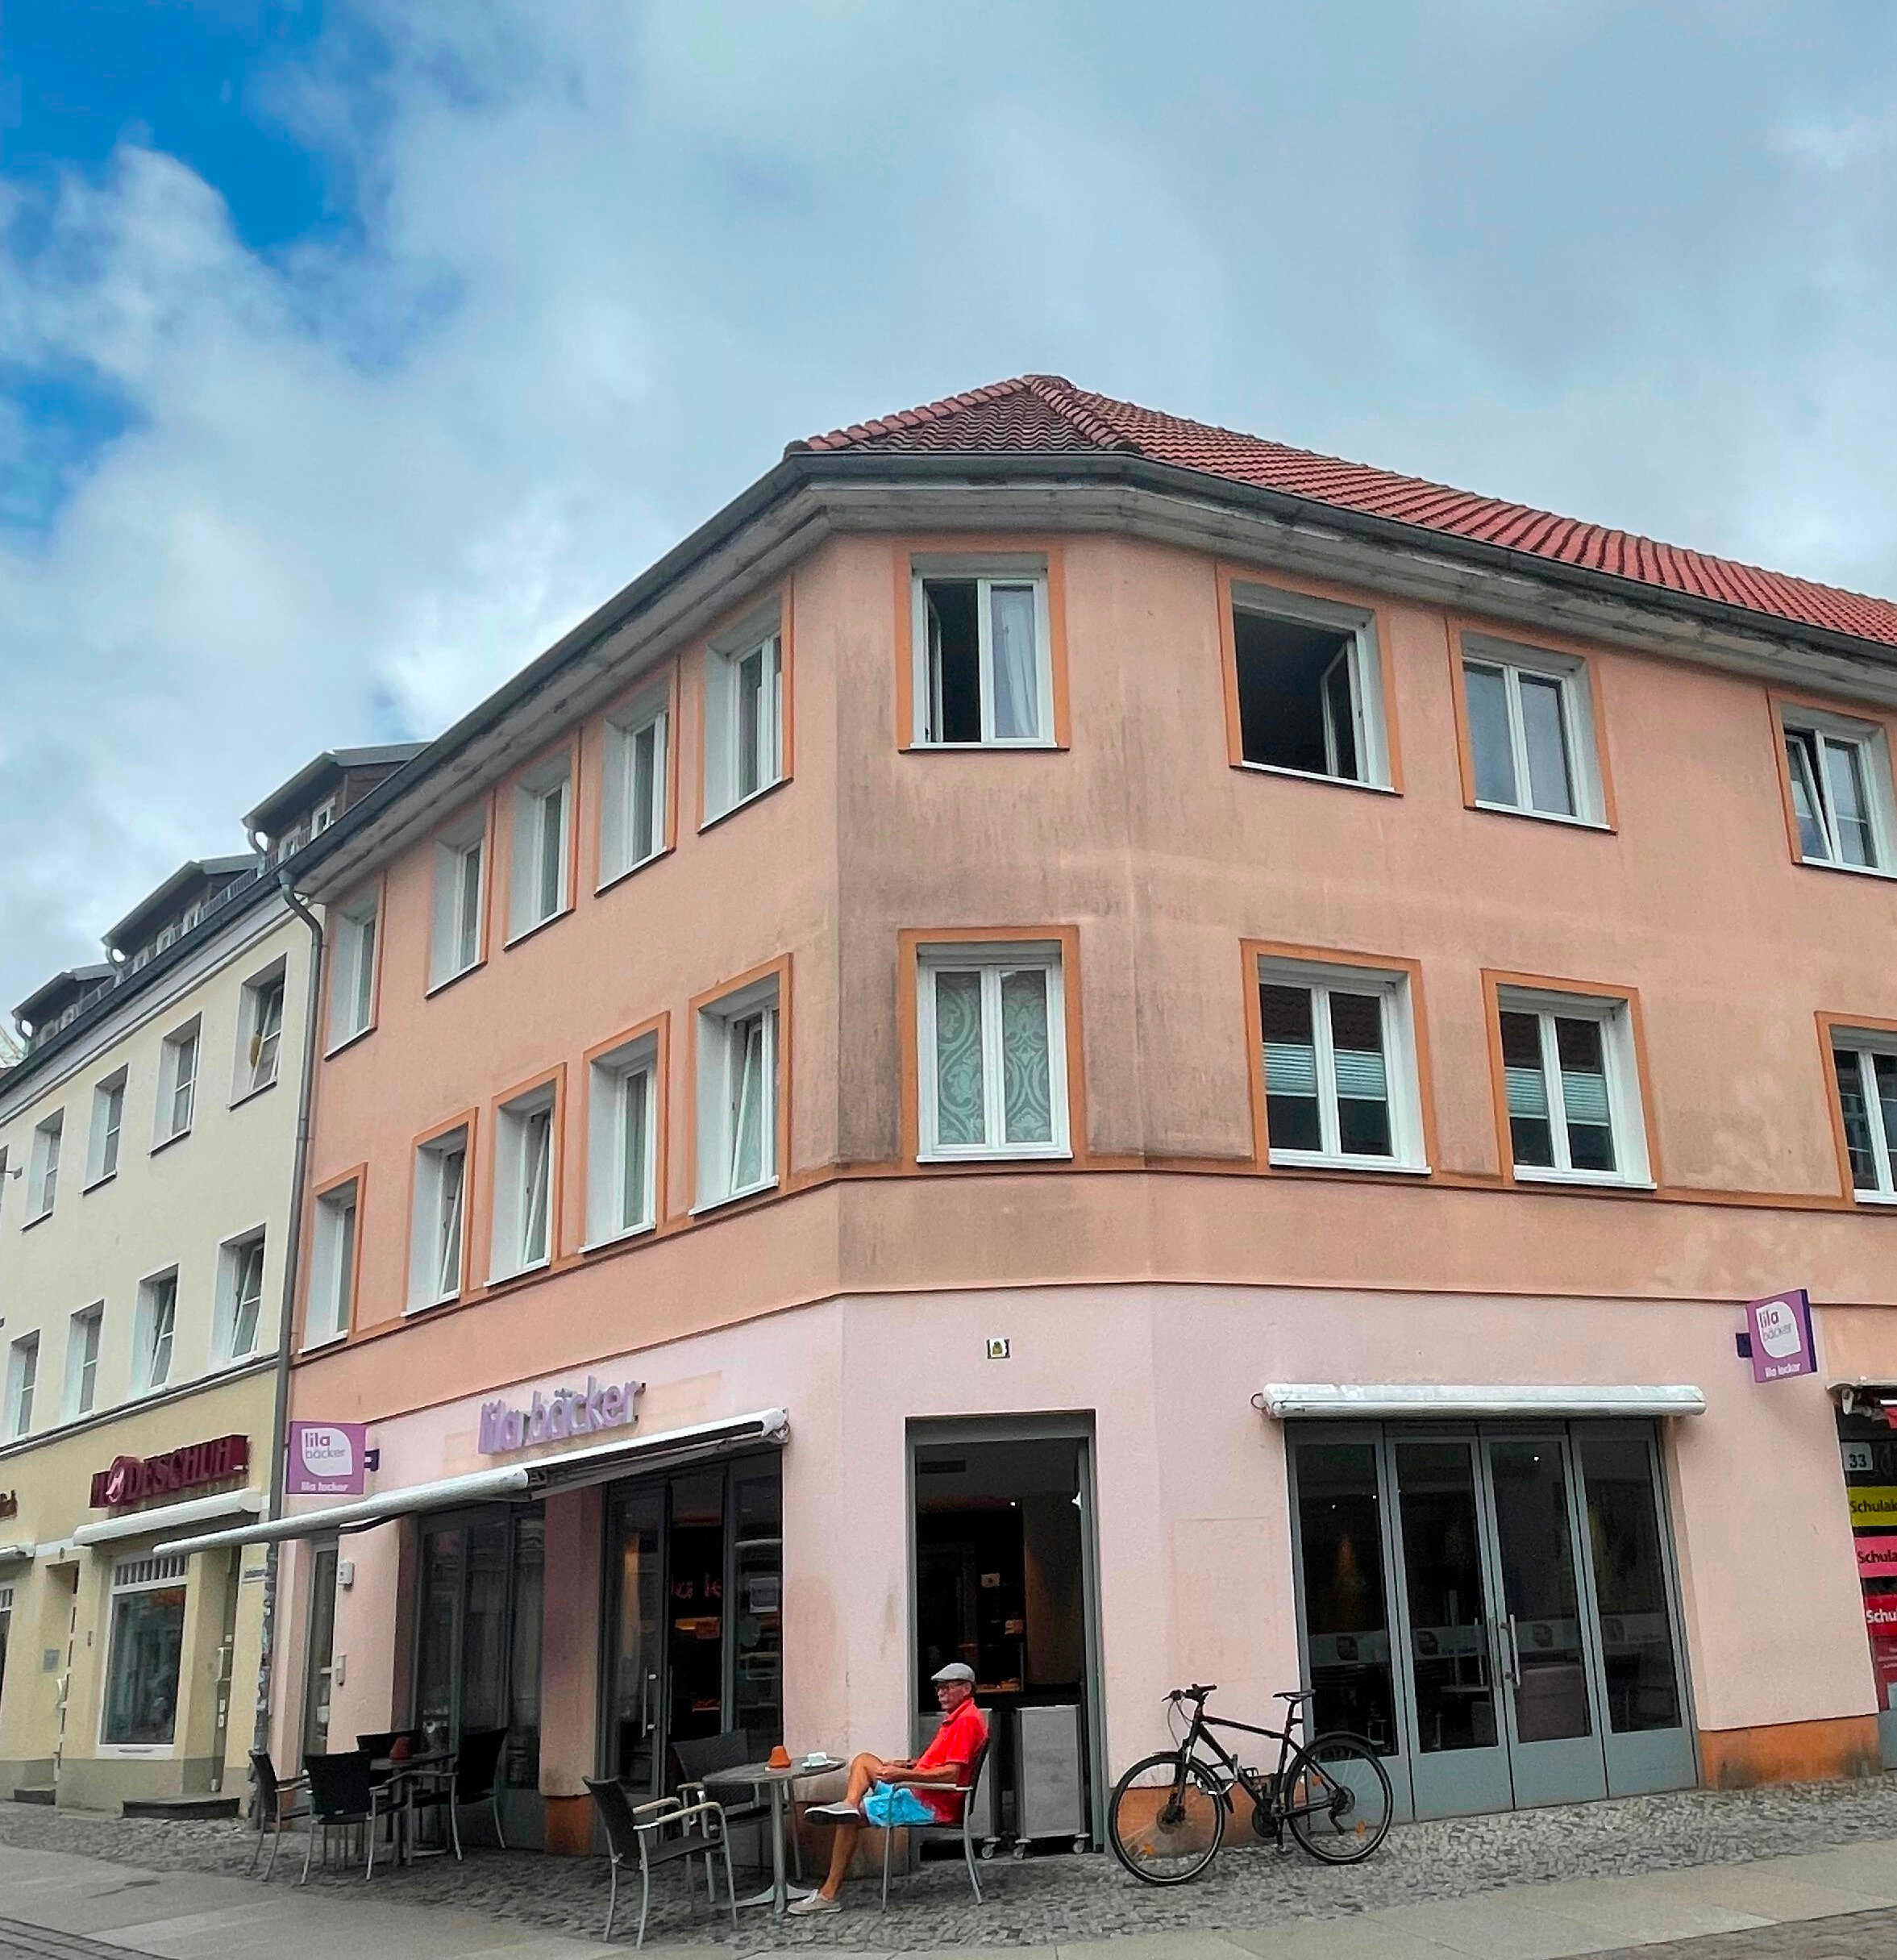 Laden zur Miete 4.800 € 115 m² Verkaufsfläche Altstadt Stralsund 18437